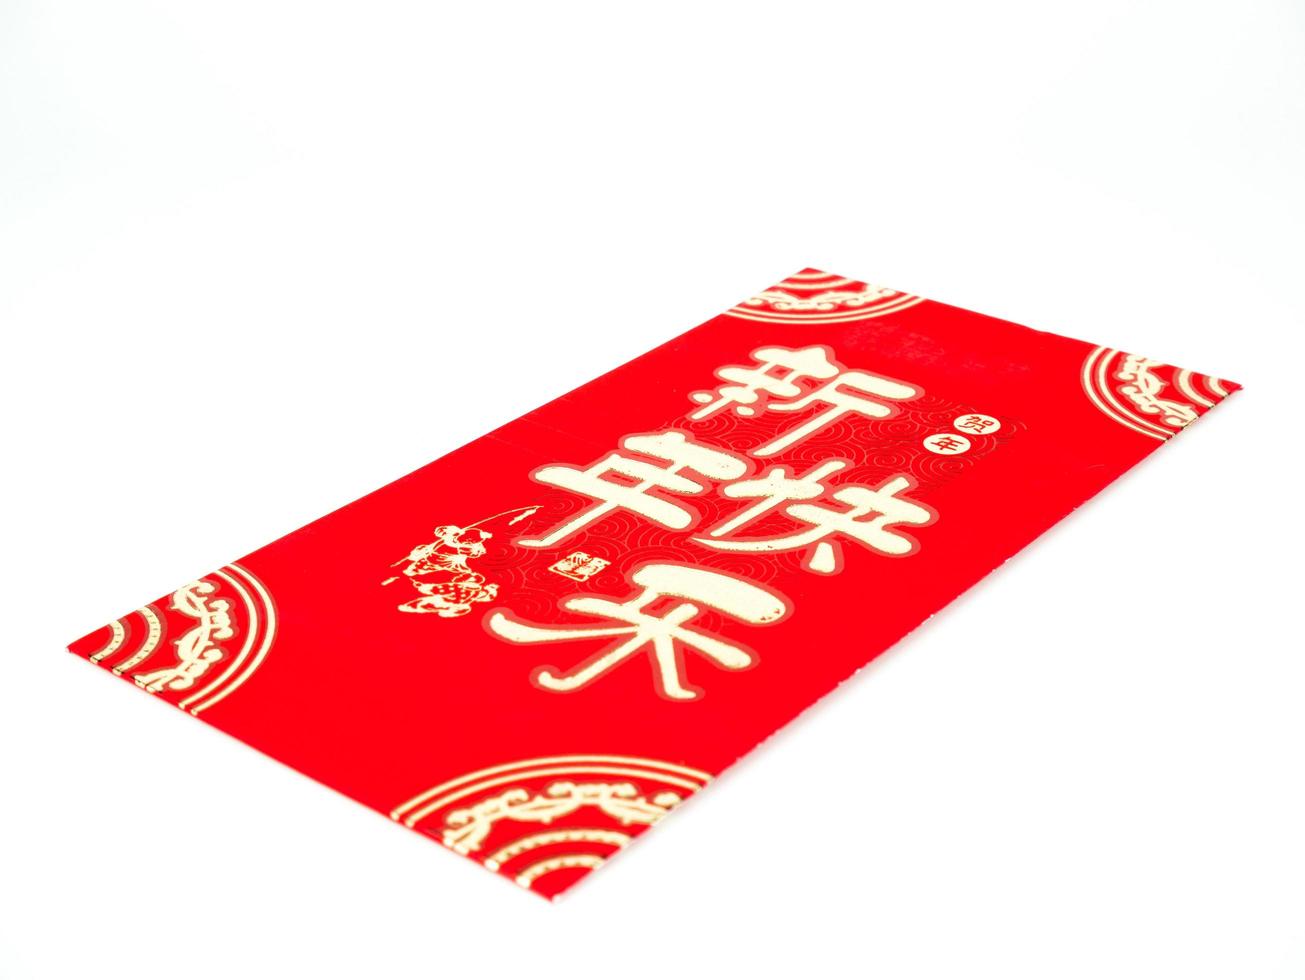 enveloppe rouge isolée sur fond blanc pour cadeau nouvel an chinois. texte chinois sur enveloppe signifiant joyeux nouvel an chinois photo